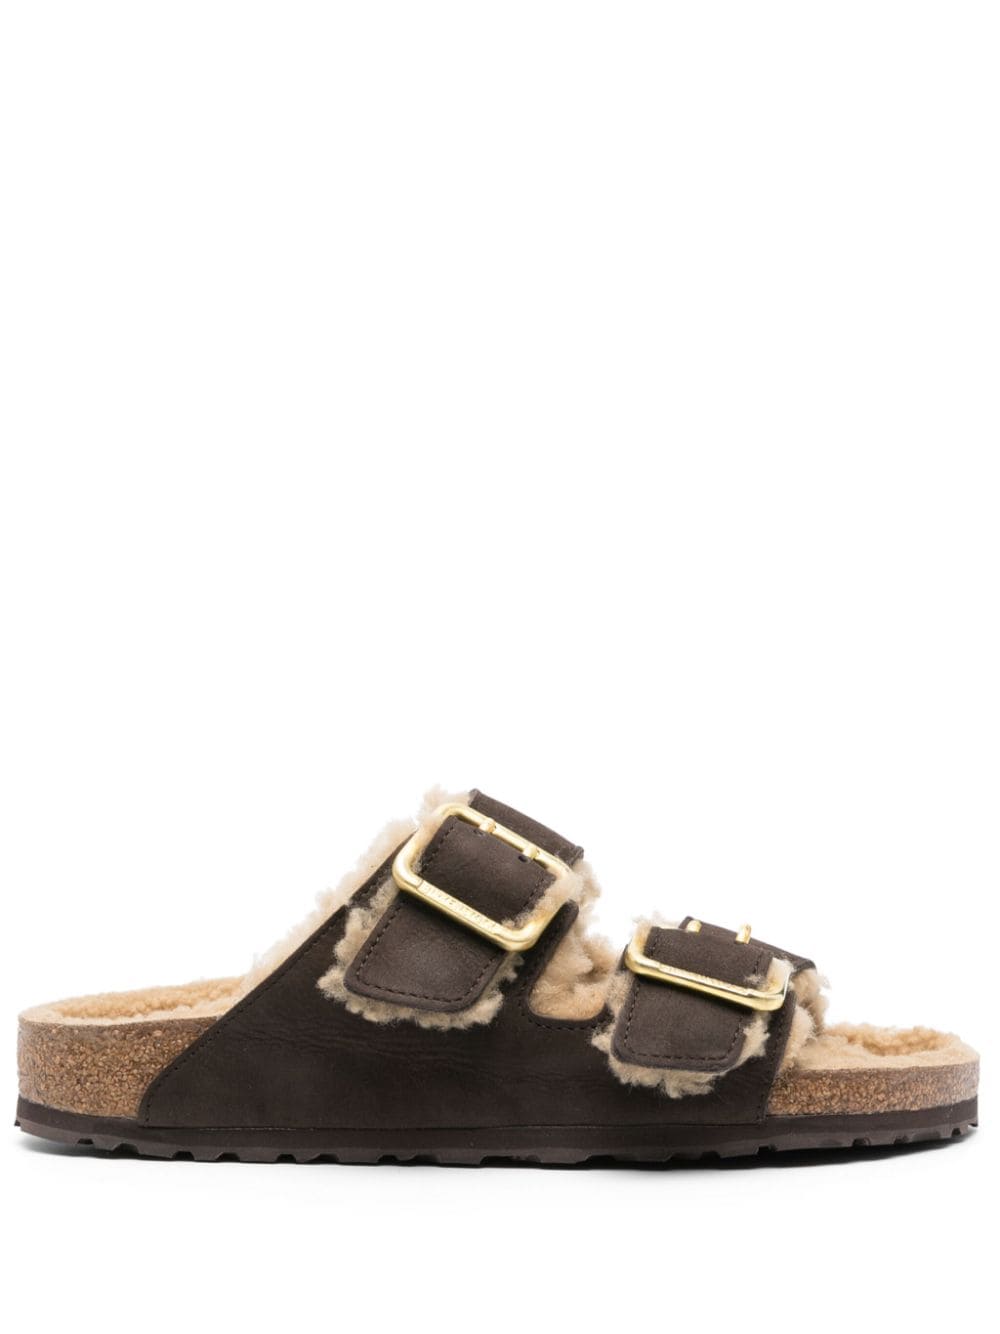 Birkenstock Arizona shearling-lined sandals - Brown von Birkenstock